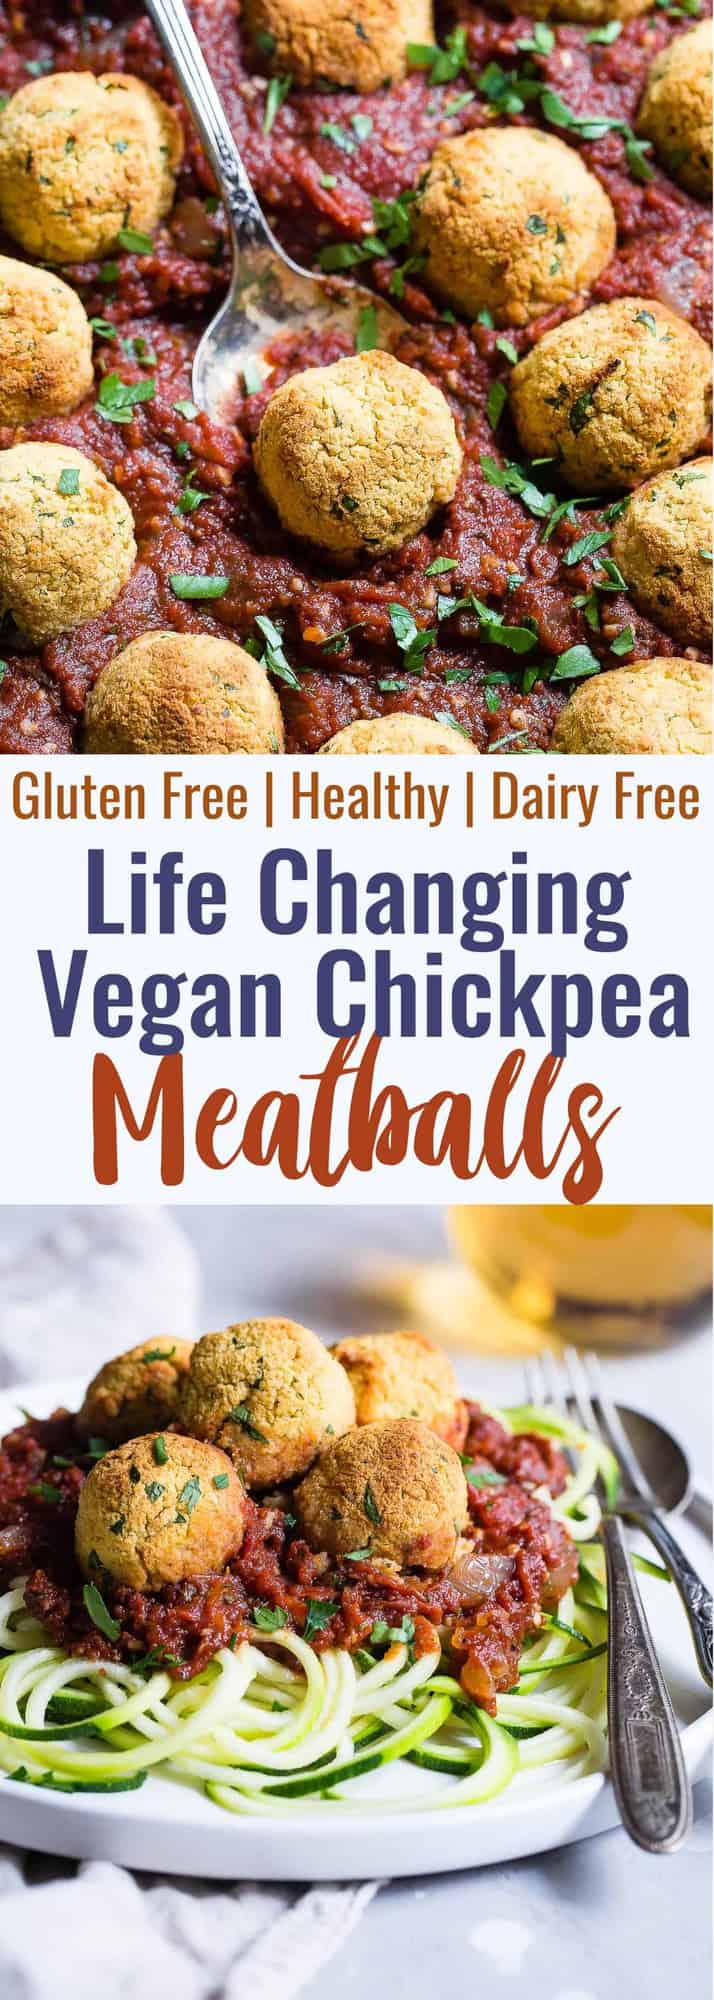 Gluten free vegan chickpea meatballs with tomato sauce